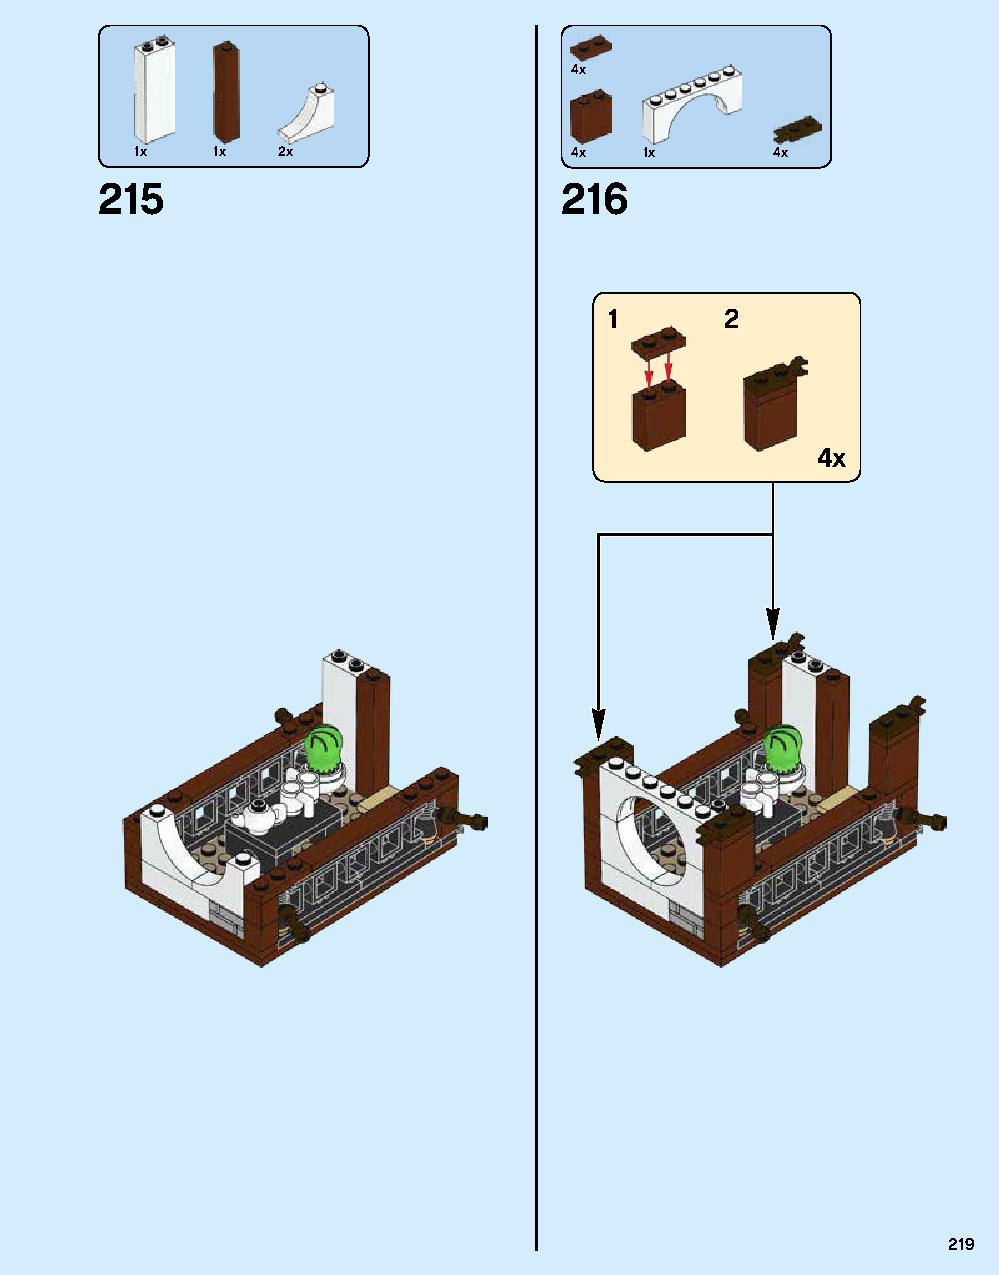 ニンジャゴー シティ 70620 レゴの商品情報 レゴの説明書・組立方法 219 page